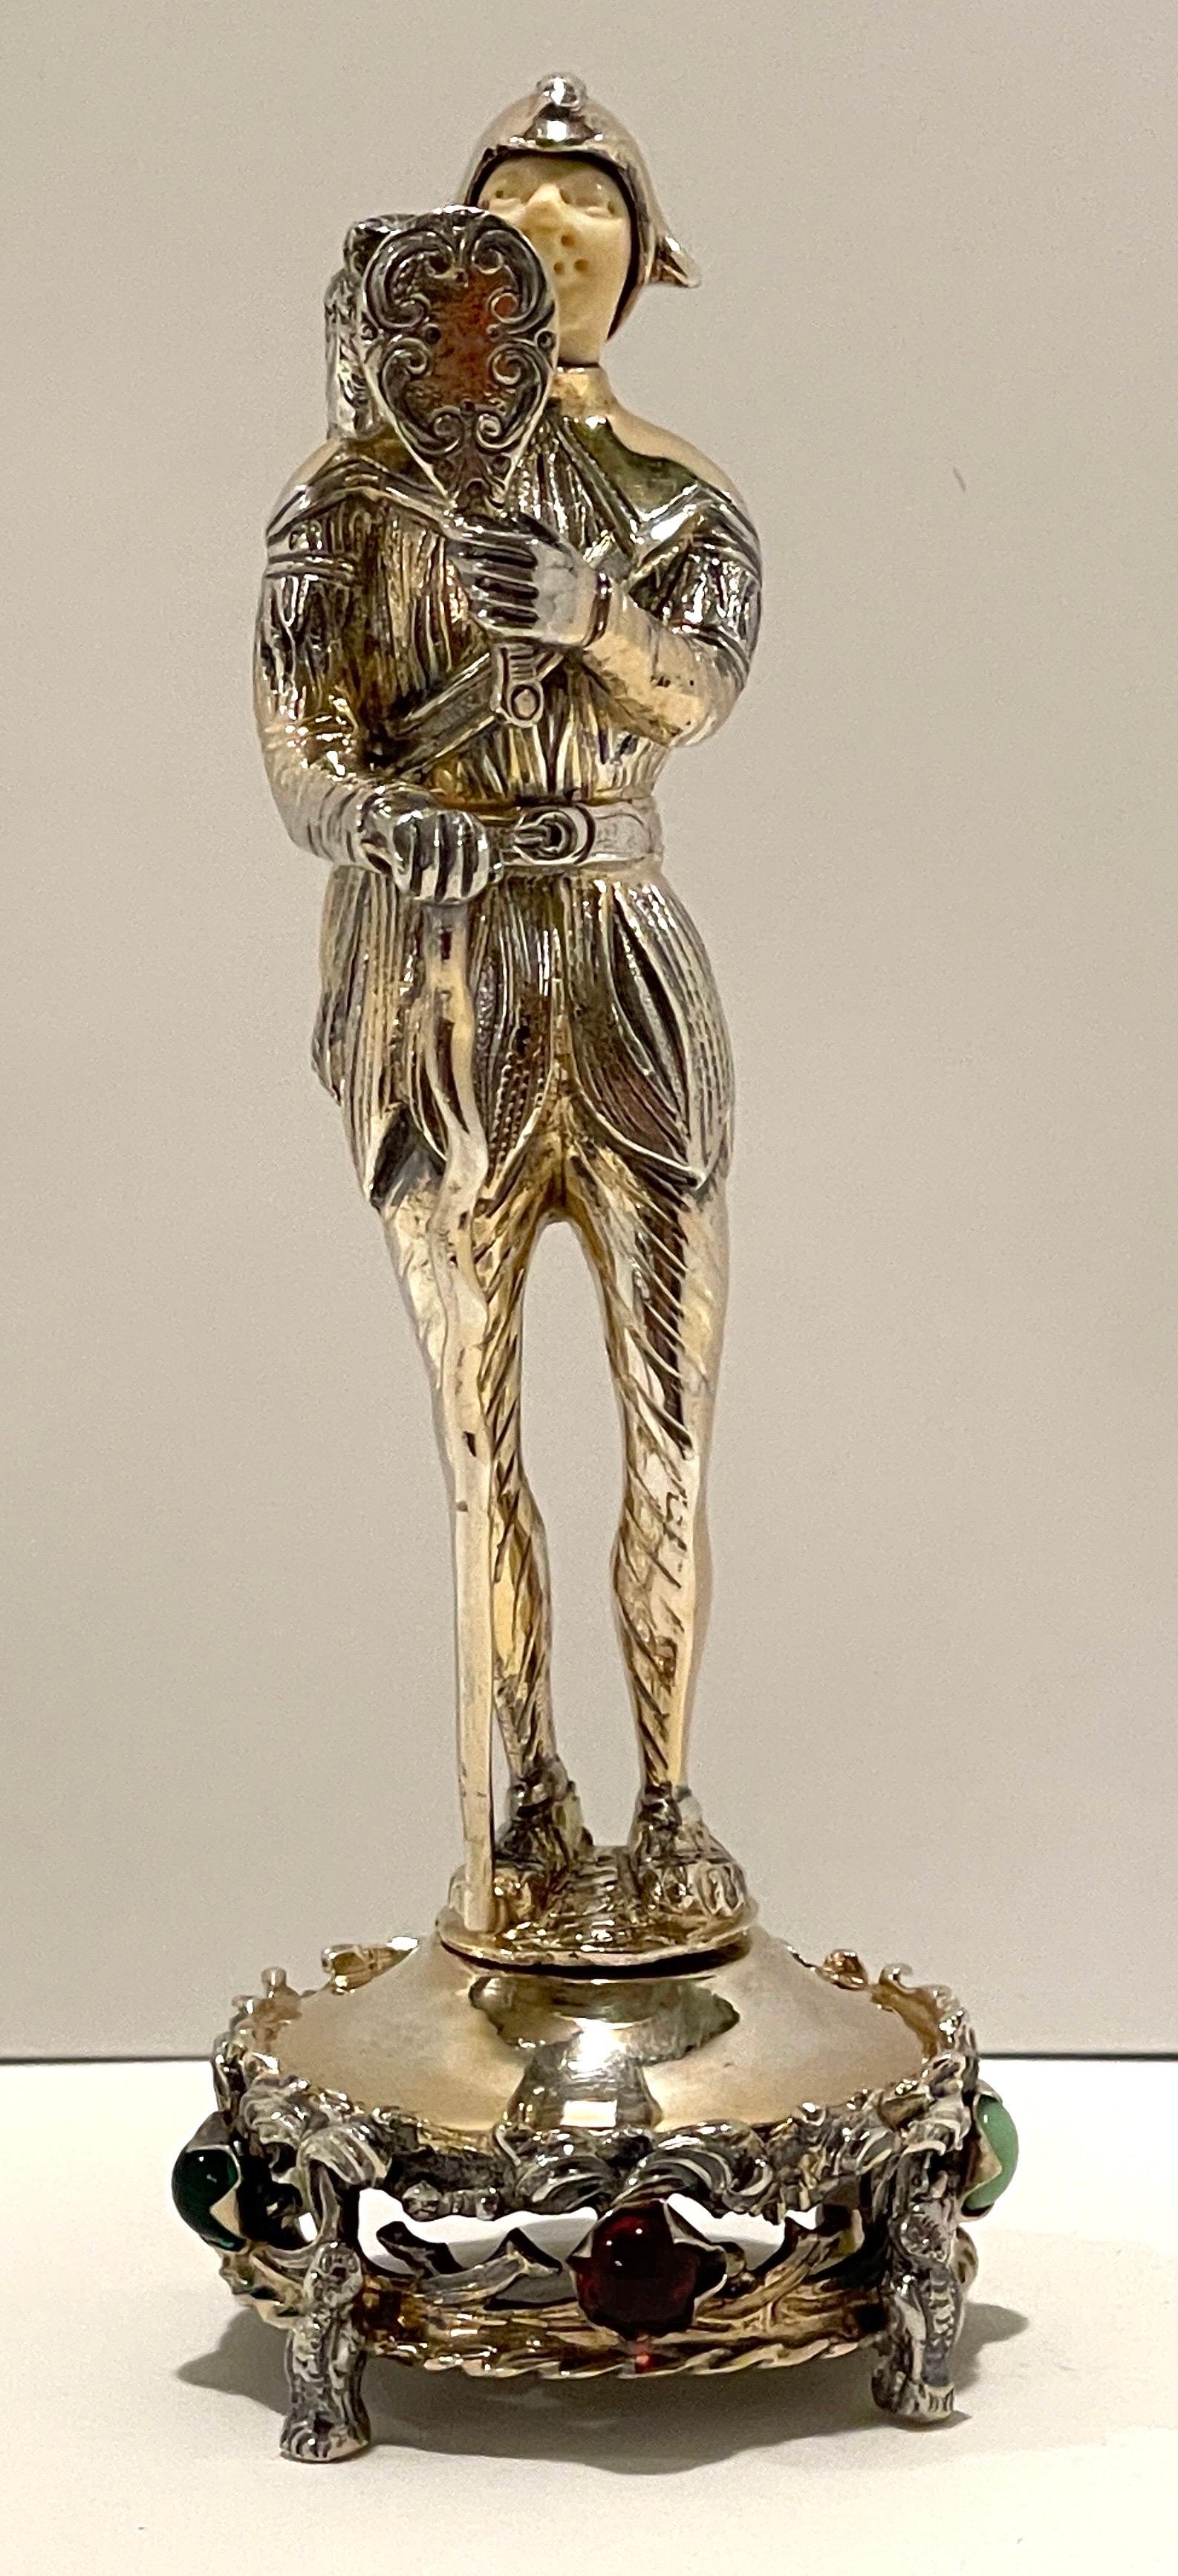 Figure d'un bouffon de la cour en sterling, os et pierres semi-précieuses
Allemagne, début du 20e siècle

Figure médiévale/renaissance méticuleusement moulée et modelée du bouffon de la cour, tenant un miroir avec un hibou sur son épaule, sur un